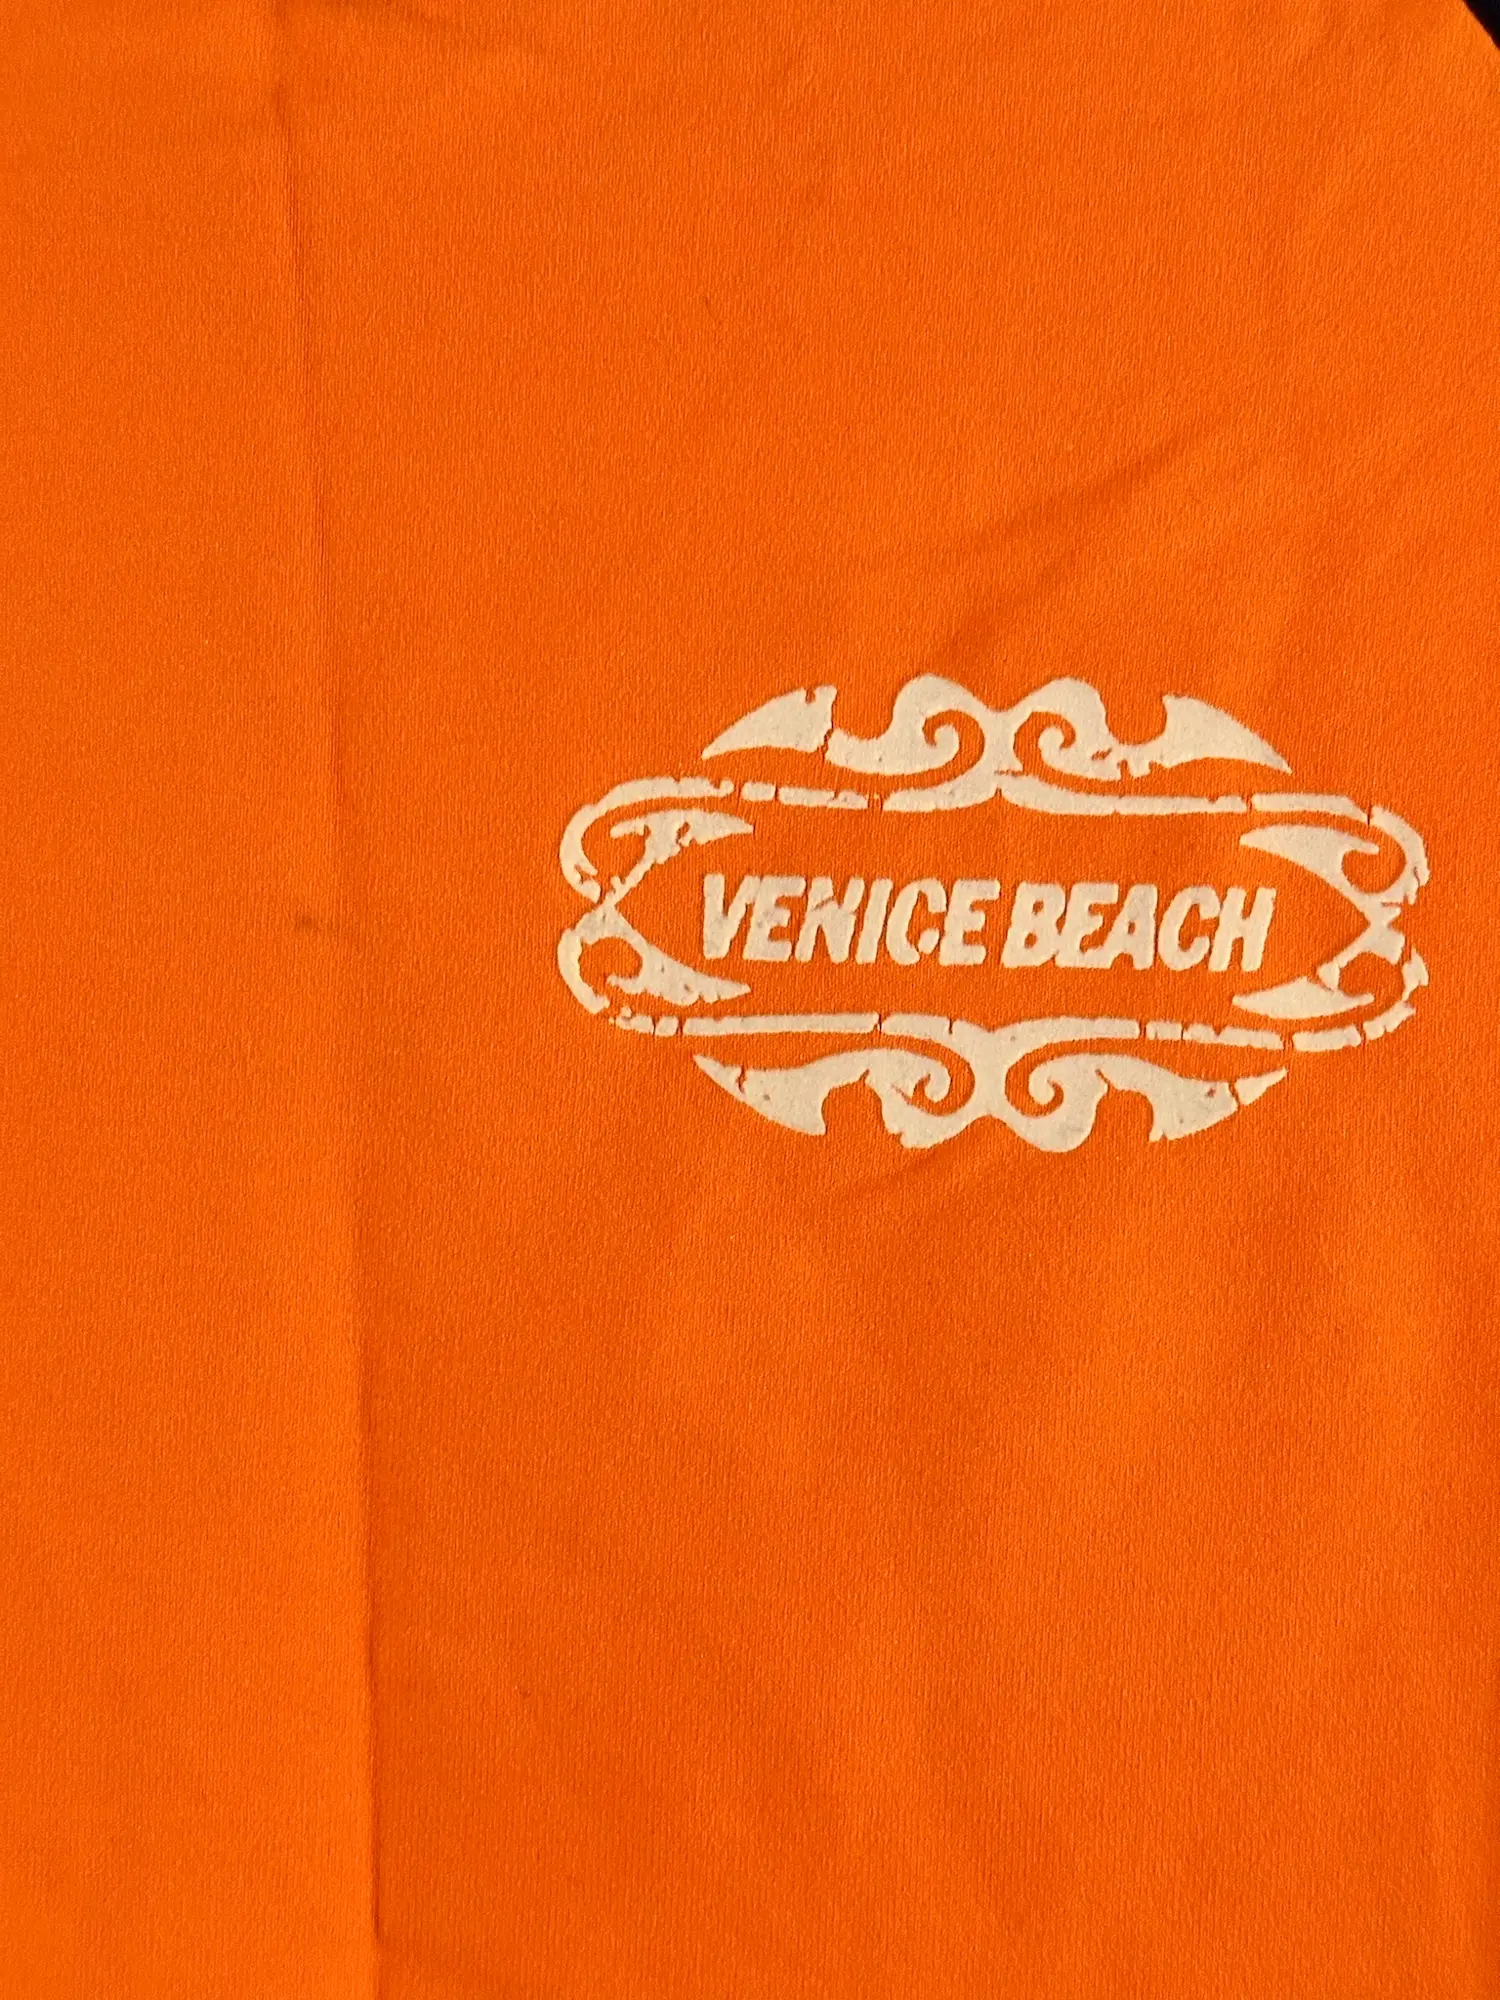 Venice Beach andet sportstøj